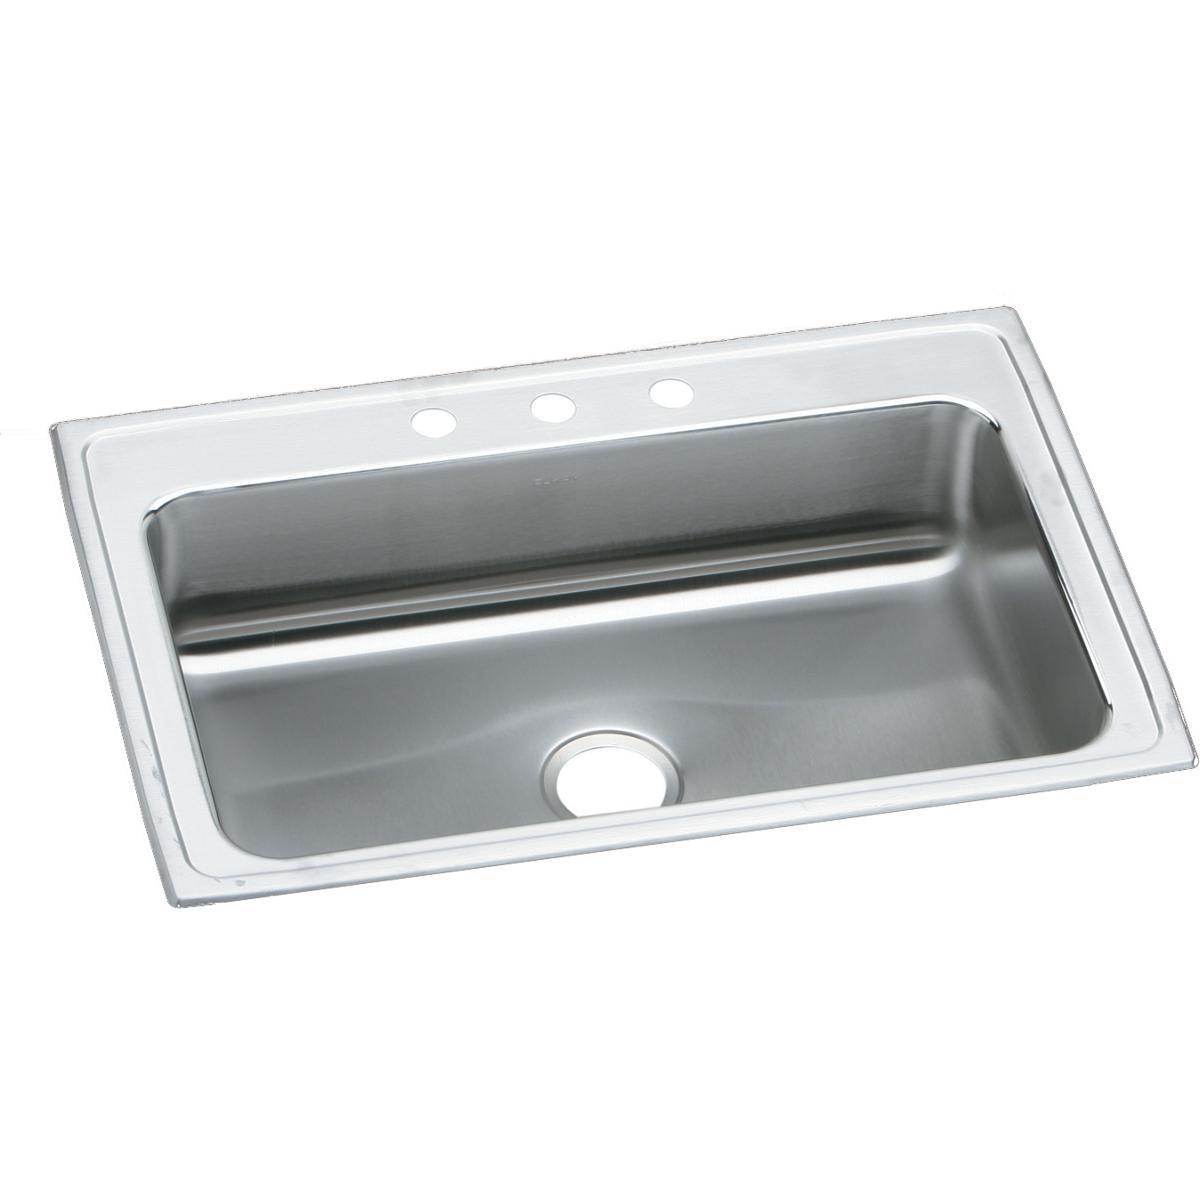 Elkay Lustertone Classic 33" x 22" x 7-5/8" Single Bowl Stainless Steel Drop-in Sink